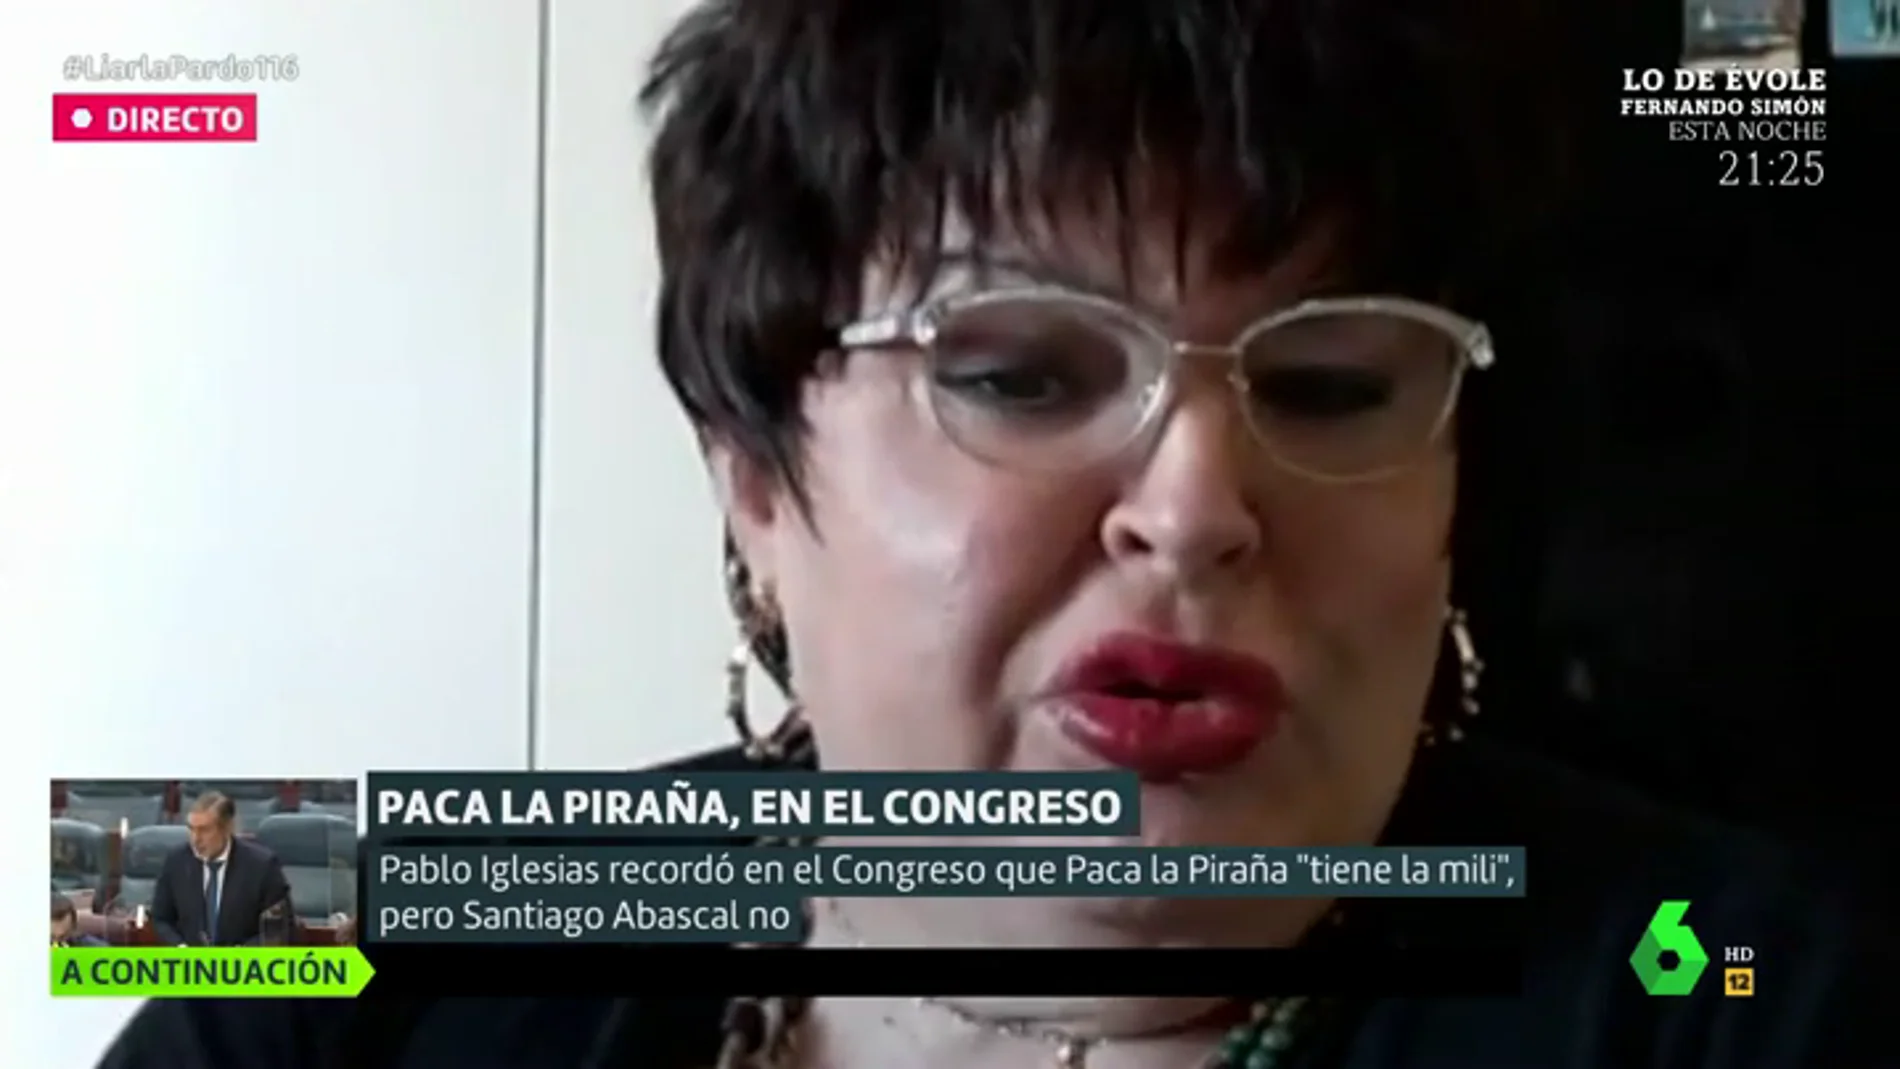 Paca la Piraña recuerda cómo vivió la mili: "Me daba miedo, me duchaba con el culo apretado"